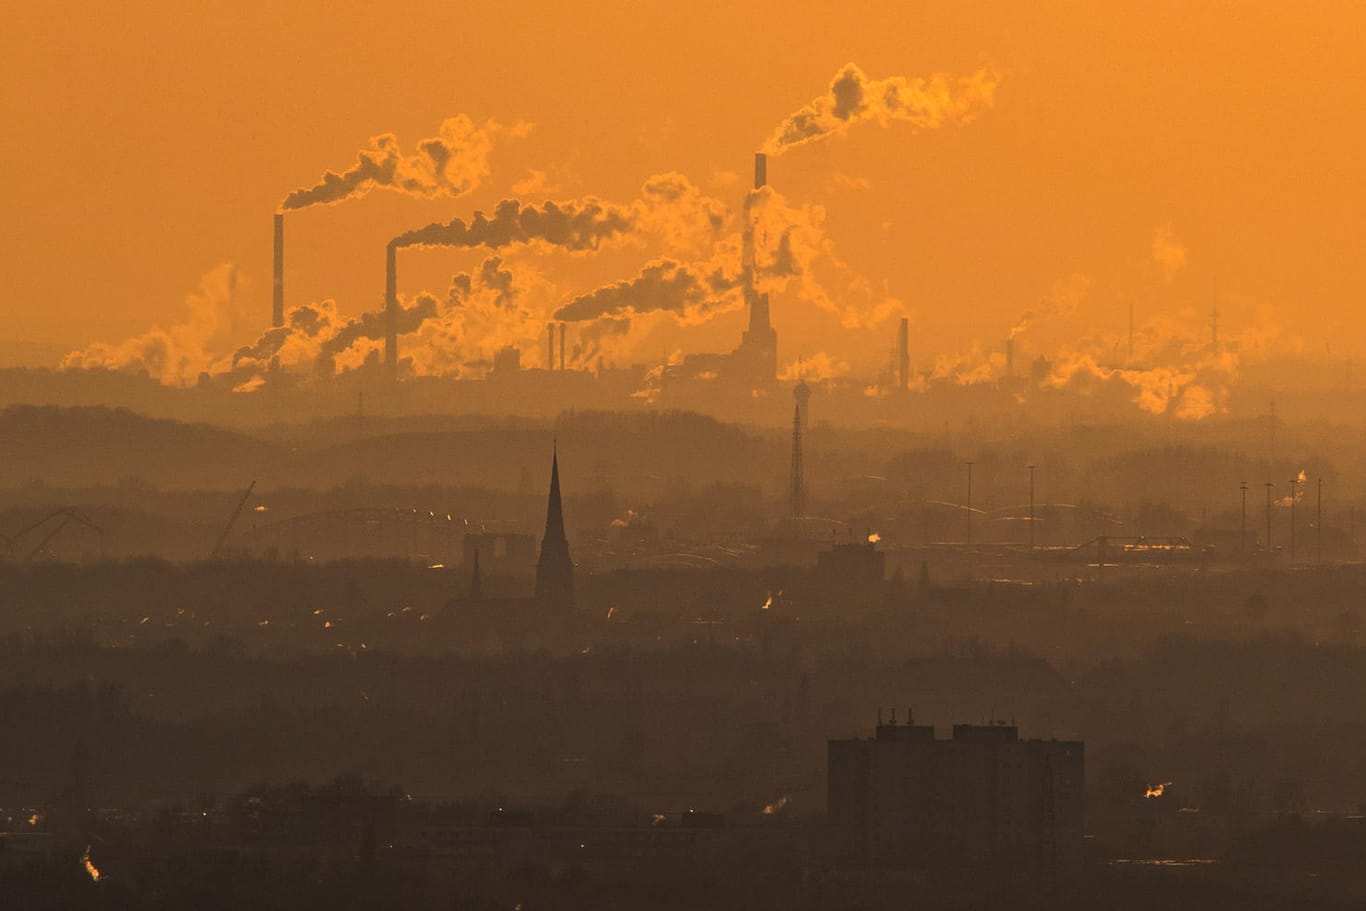 Rauch und Abgase über Oberhausen: Klimaexperten sind sich nahezu einig, dass die globale Erderwärmung von Treibhausgasemissionen ausgelöst wird.